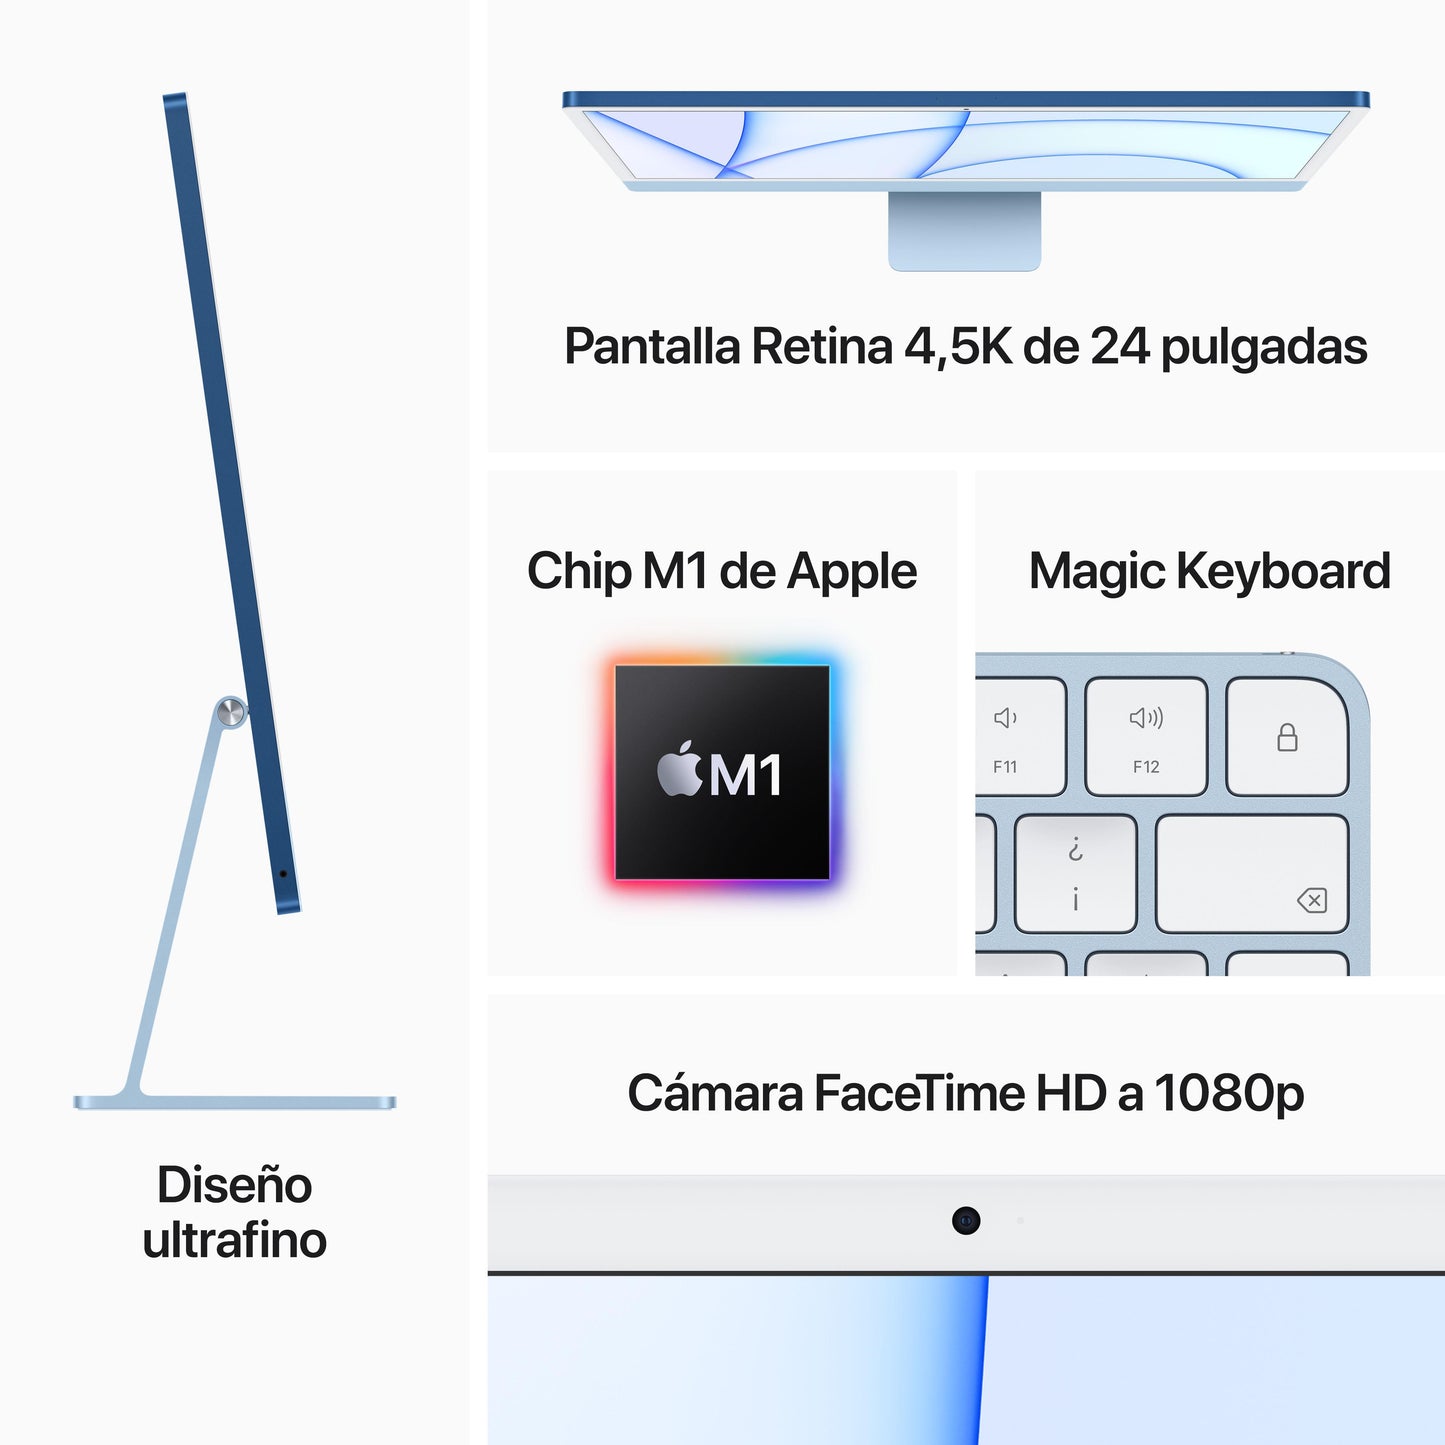 iMac con pantalla Retina 4,5K de 24 pulgadas: Chip M1 de Apple con CPU de ocho núcleos y GPU de siete núcleos, 256 GB SSD - Azul - Rossellimac